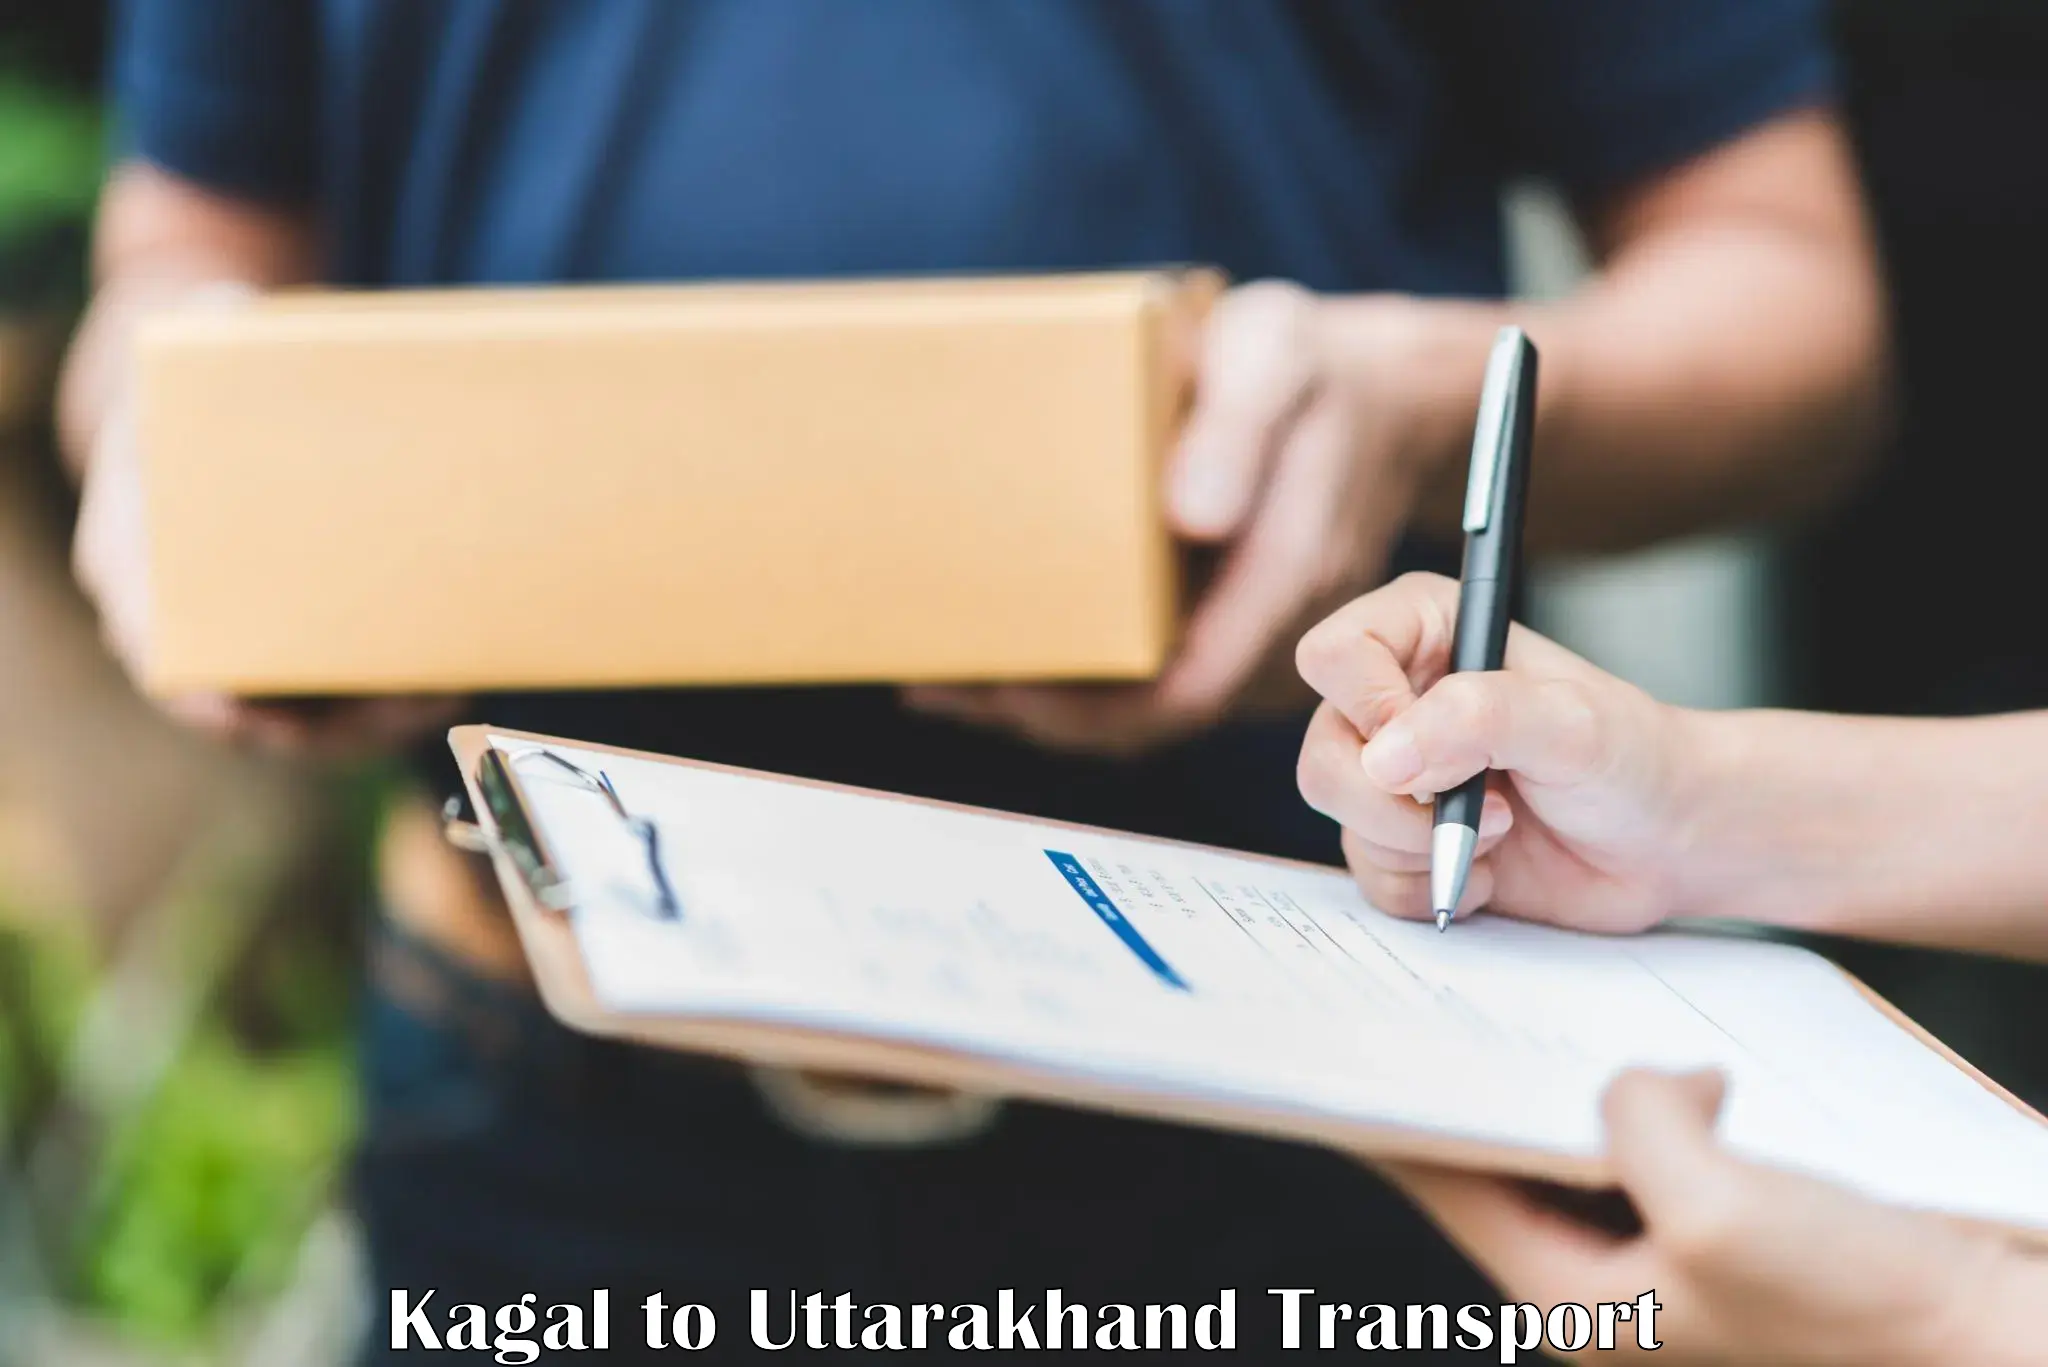 Furniture transport service Kagal to Pithoragarh